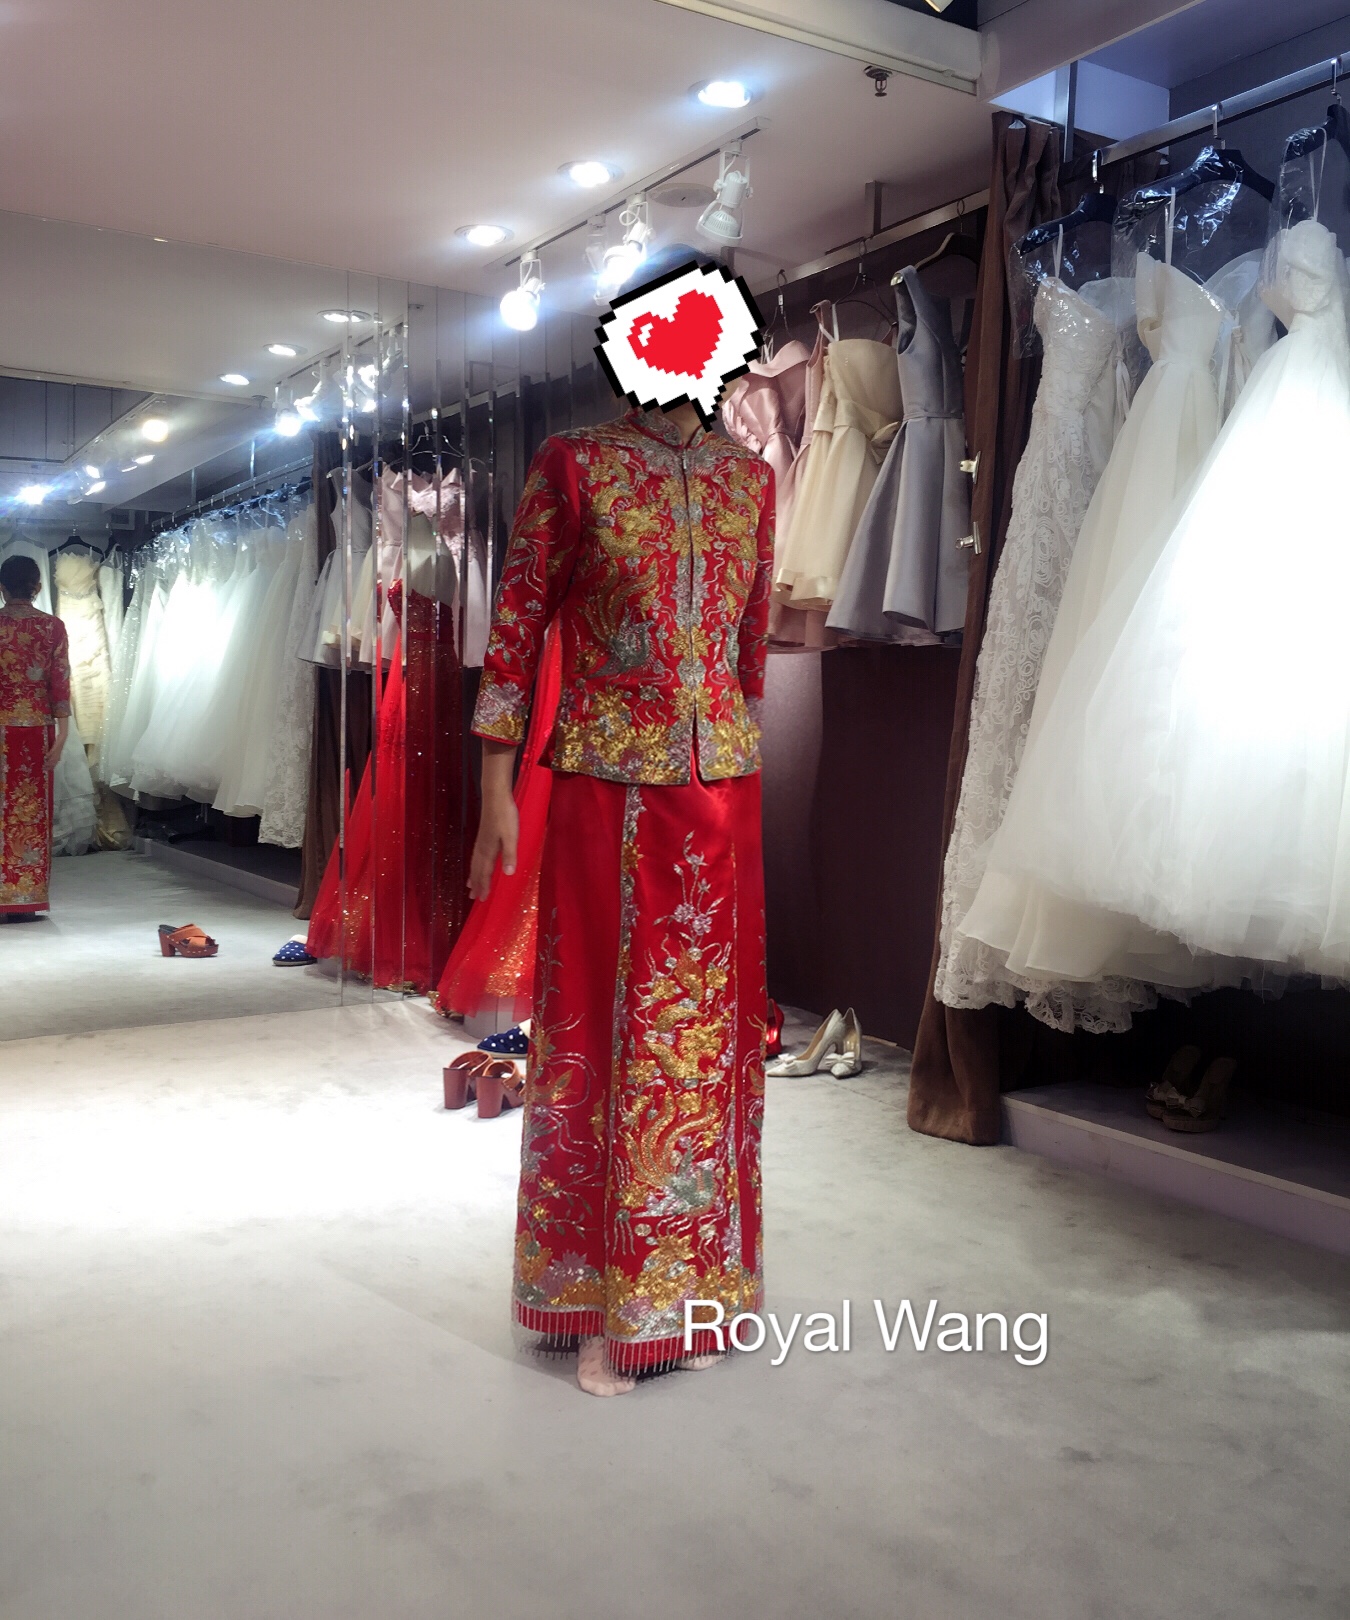 ROYAL WANG皇家高级婚纱礼服馆